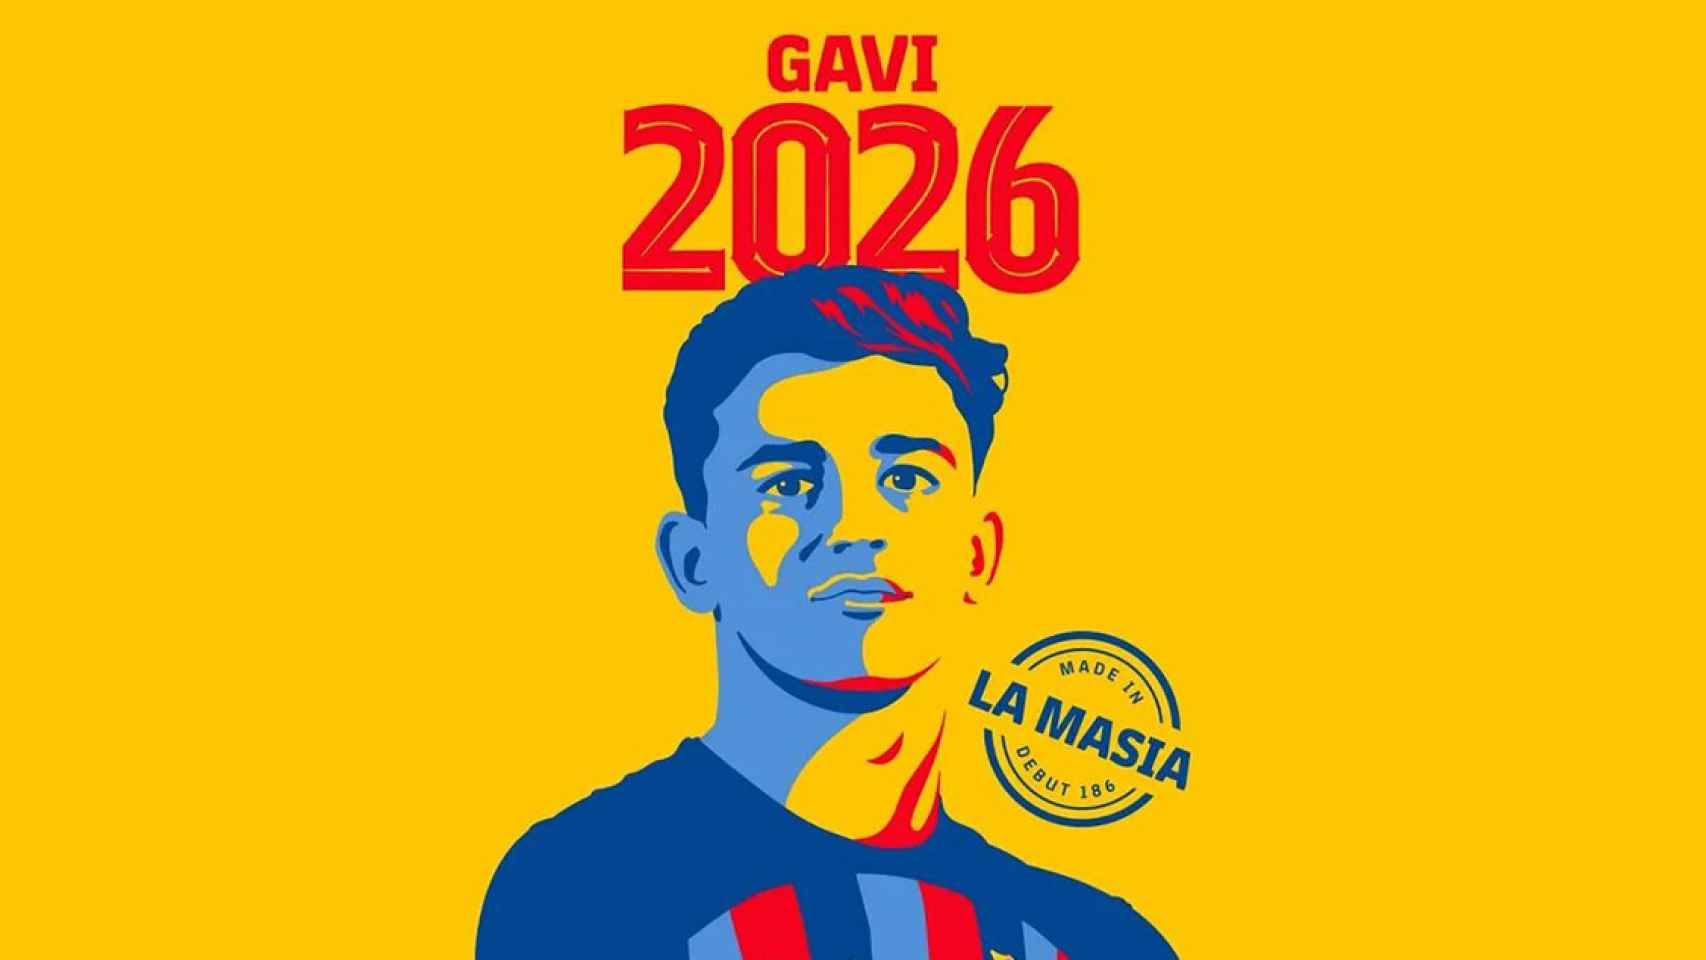 El Barça ha hecho oficial la renovación de Gavi / FCB